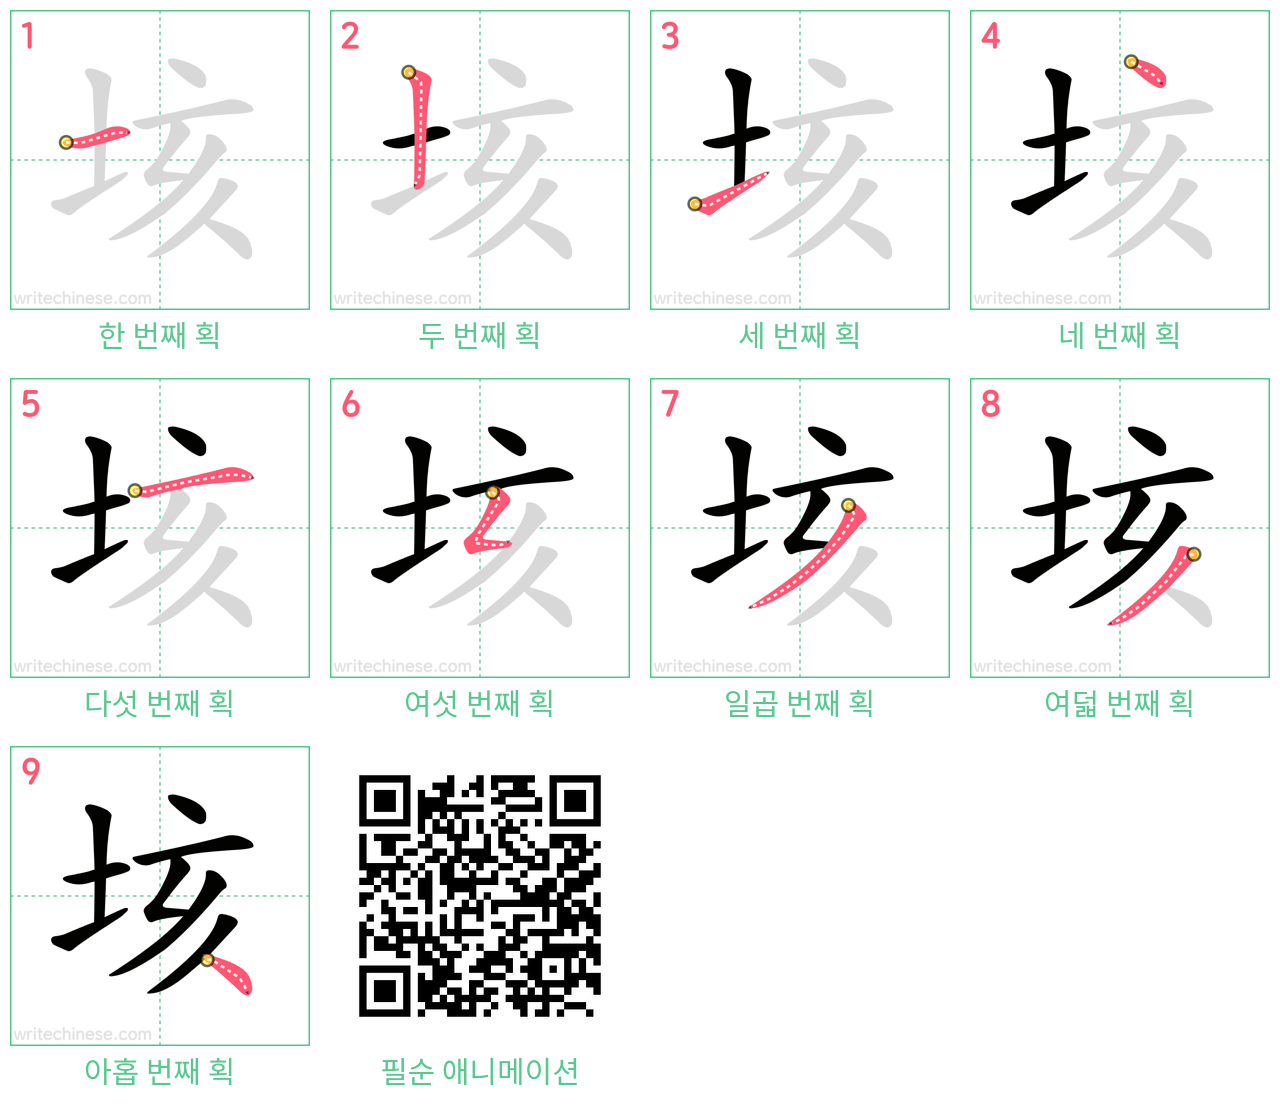 垓 step-by-step stroke order diagrams